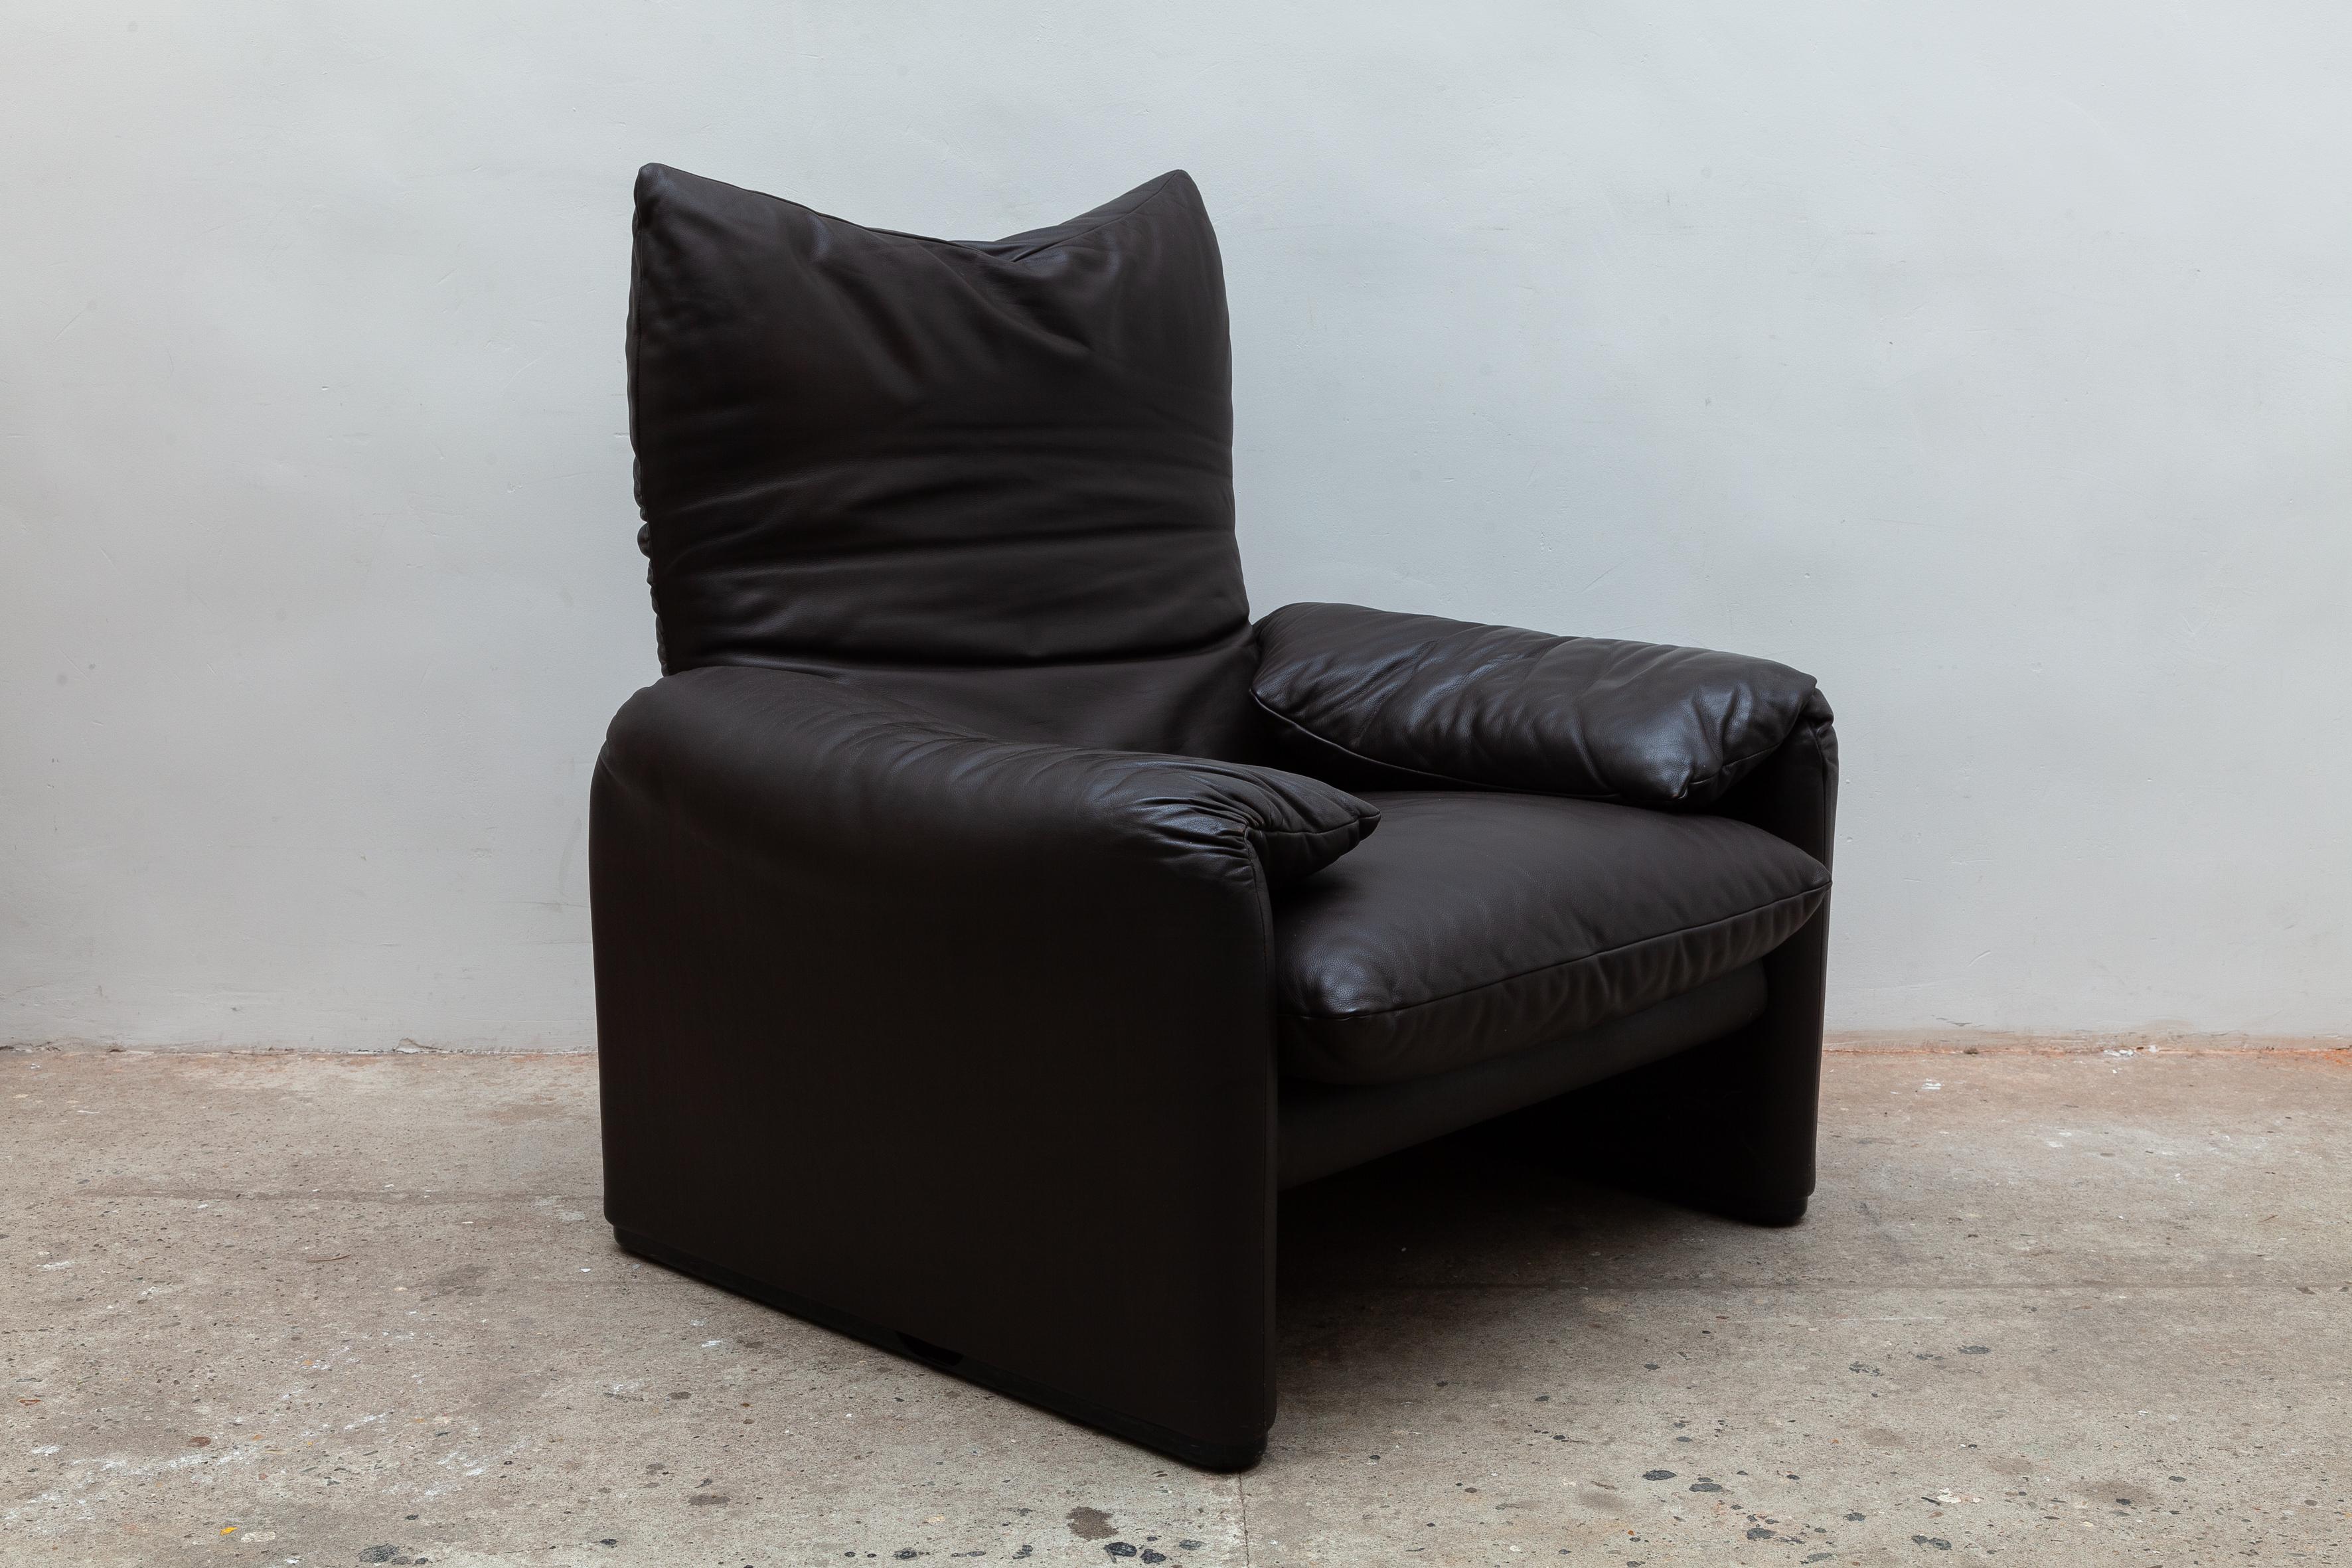 Vico Magistretti, lounge chair model 